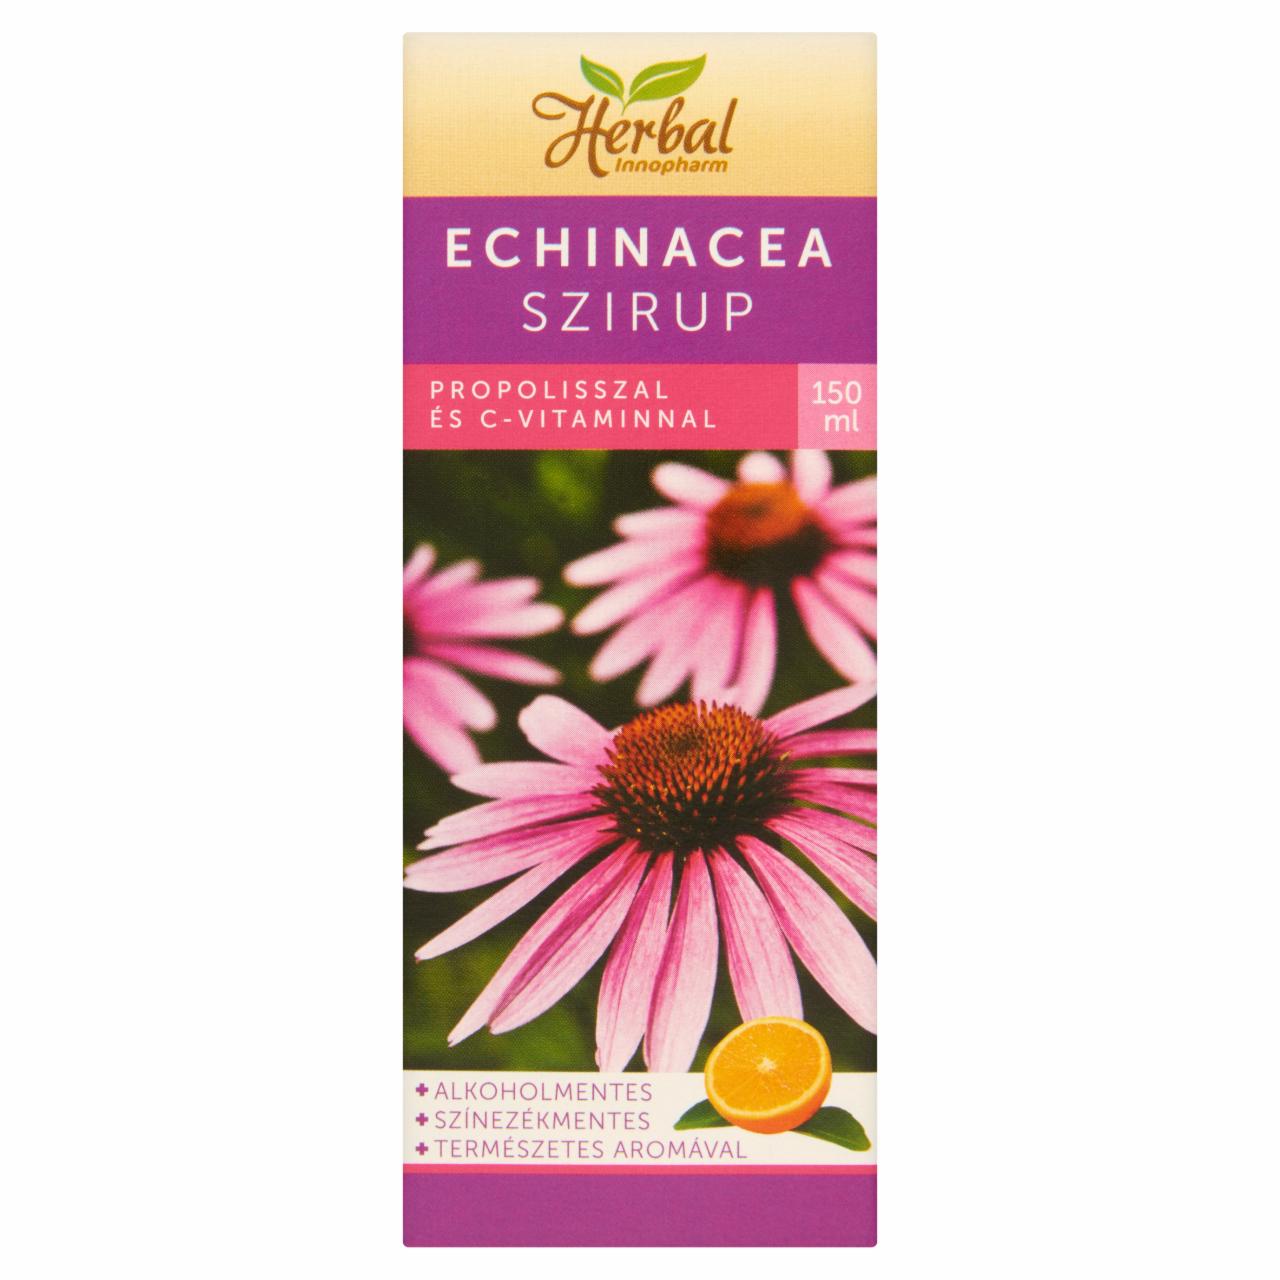 Képek - InnoPharm Herbal Echinacea narancs ízű étrend-kiegészítő szirup propolisszal és C-vitaminnal 150 ml